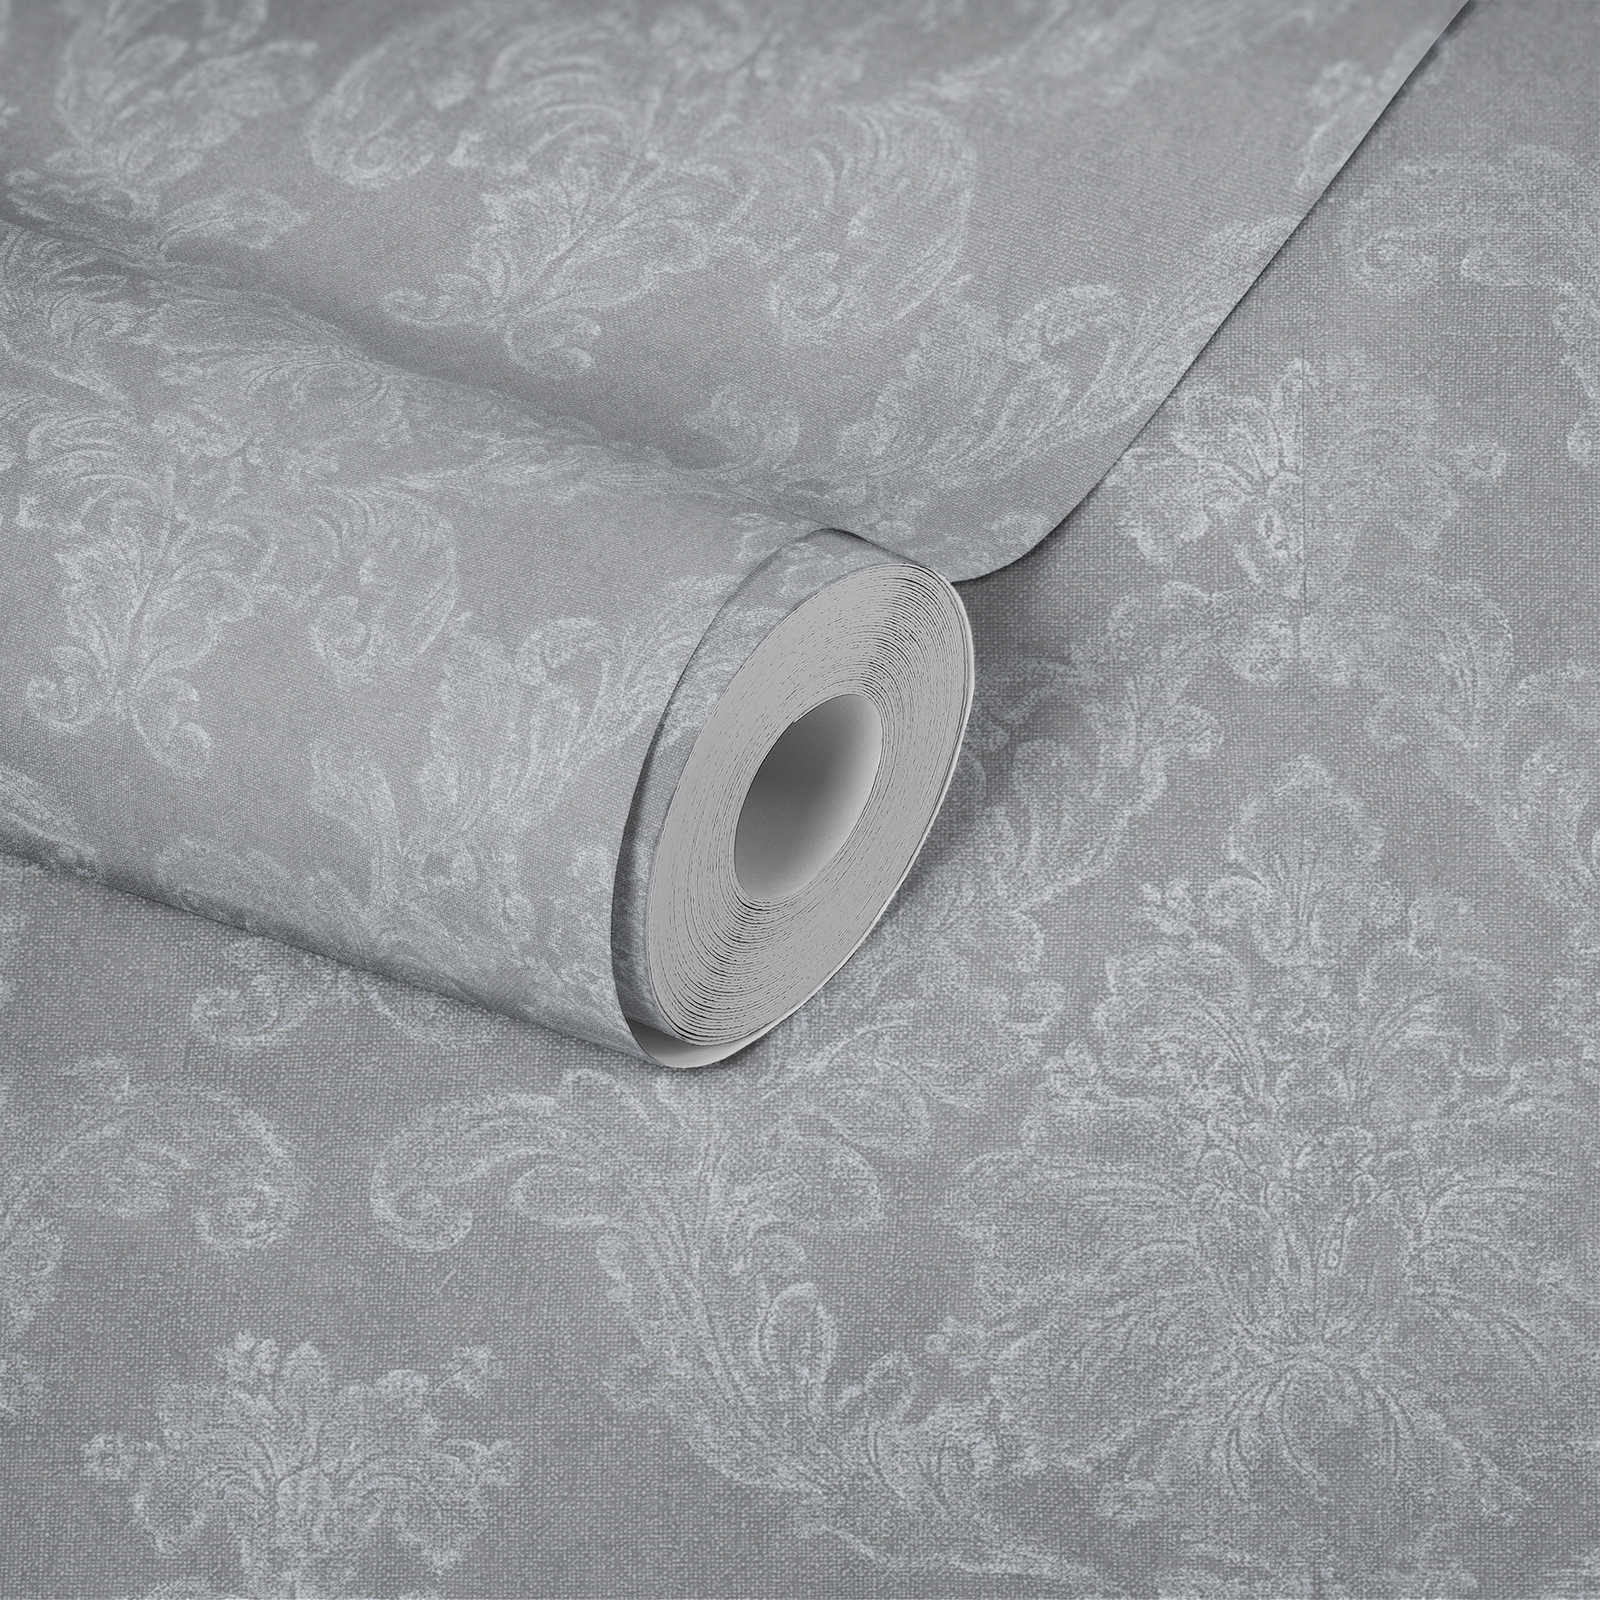             Sierbehang in landelijke stijl met textiellook - grijs, wit
        